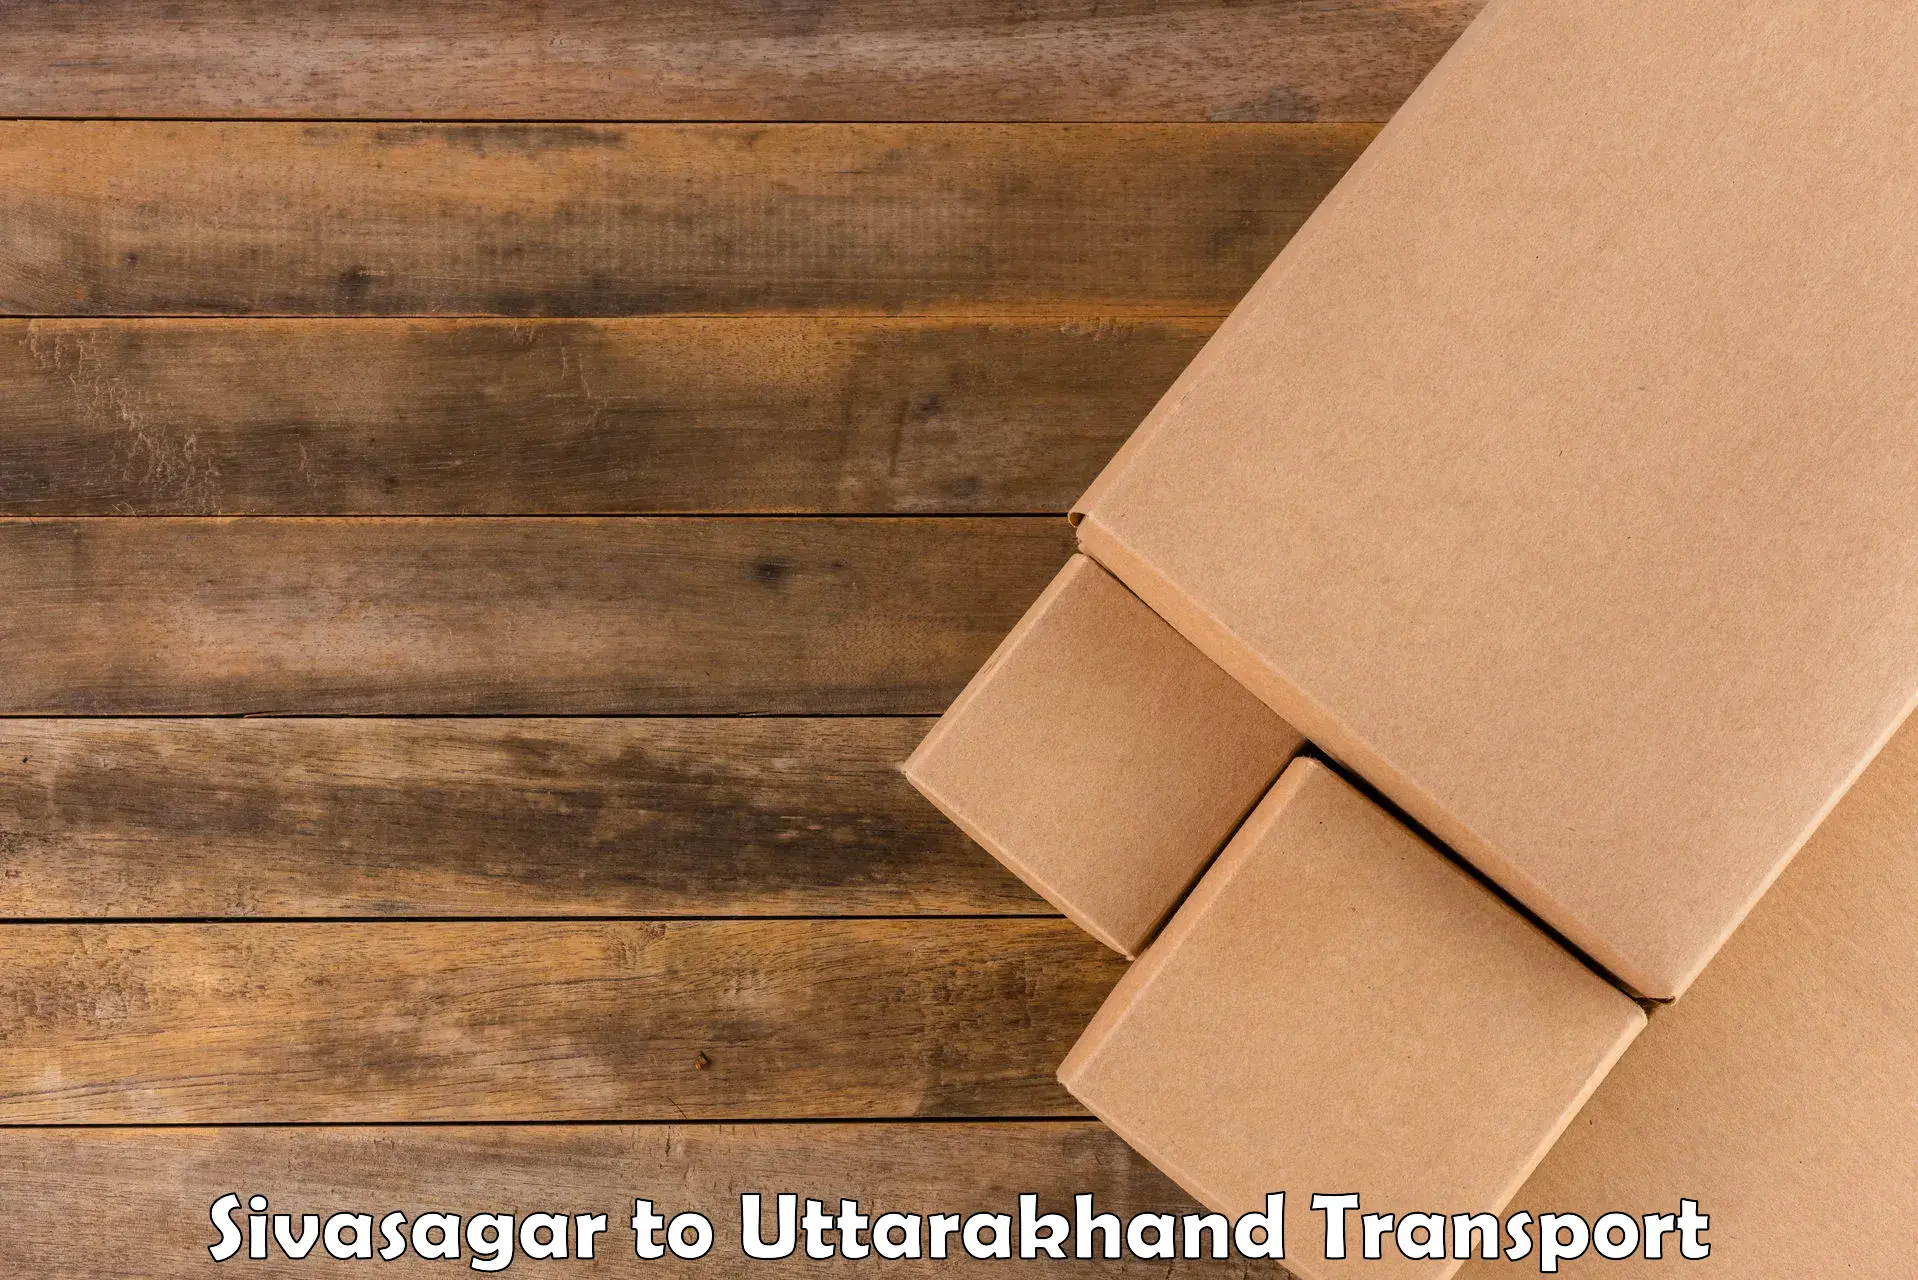 Parcel transport services Sivasagar to Ramnagar